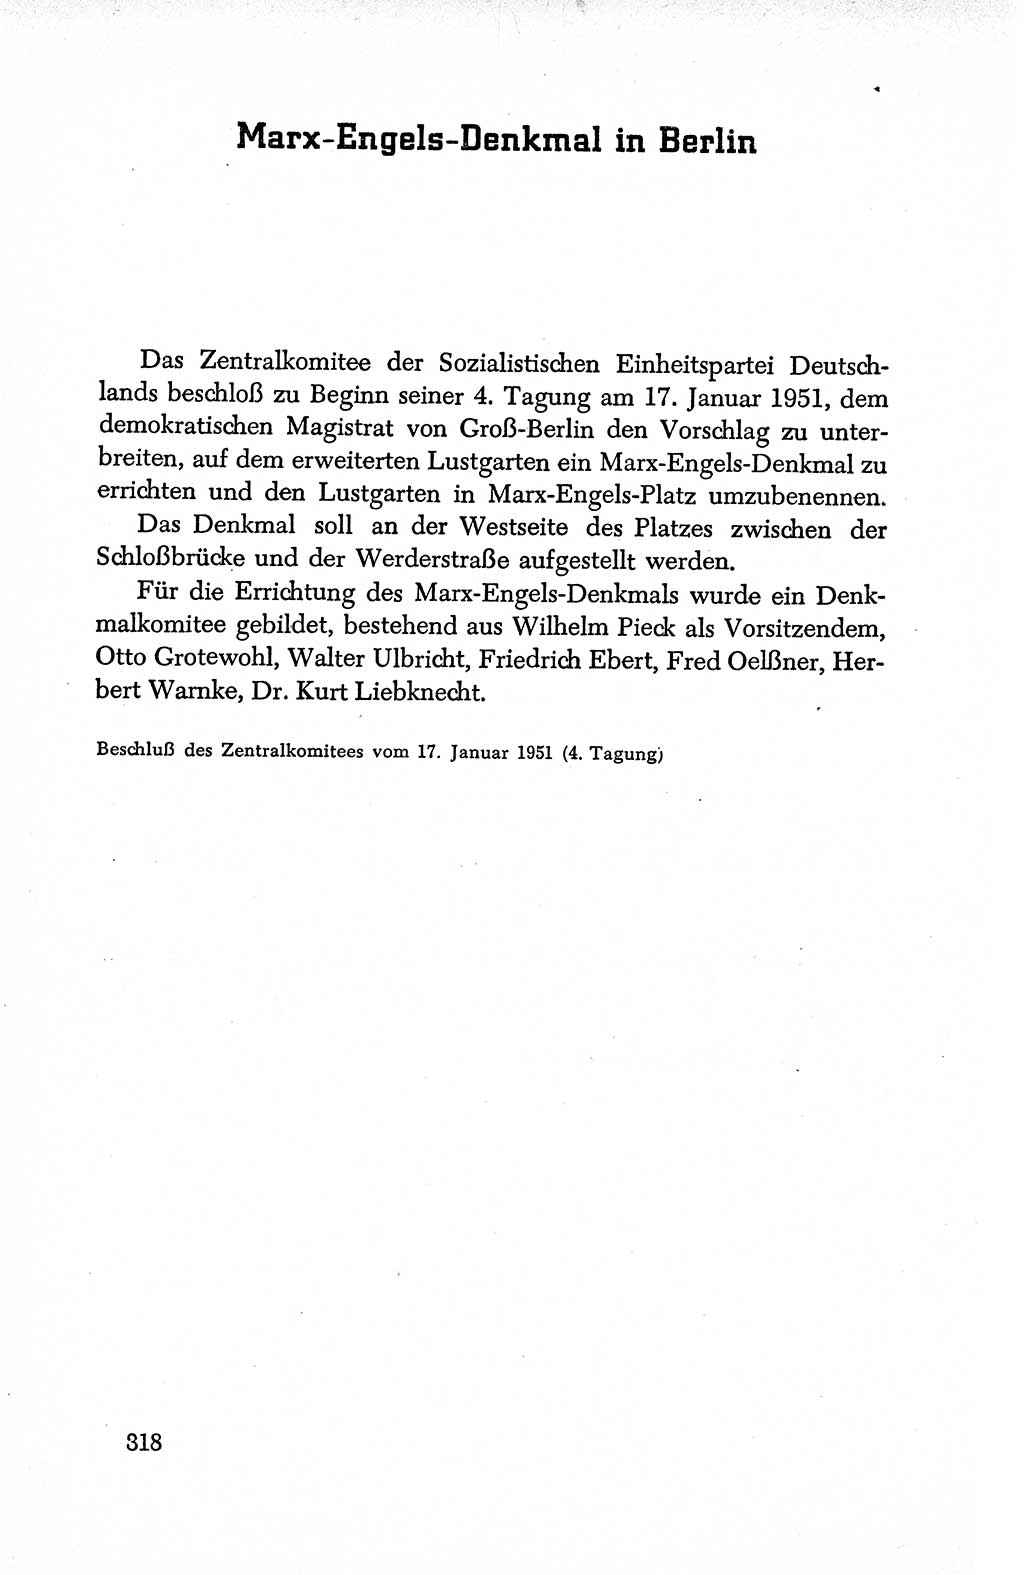 Dokumente der Sozialistischen Einheitspartei Deutschlands (SED) [Deutsche Demokratische Republik (DDR)] 1950-1952, Seite 318 (Dok. SED DDR 1950-1952, S. 318)